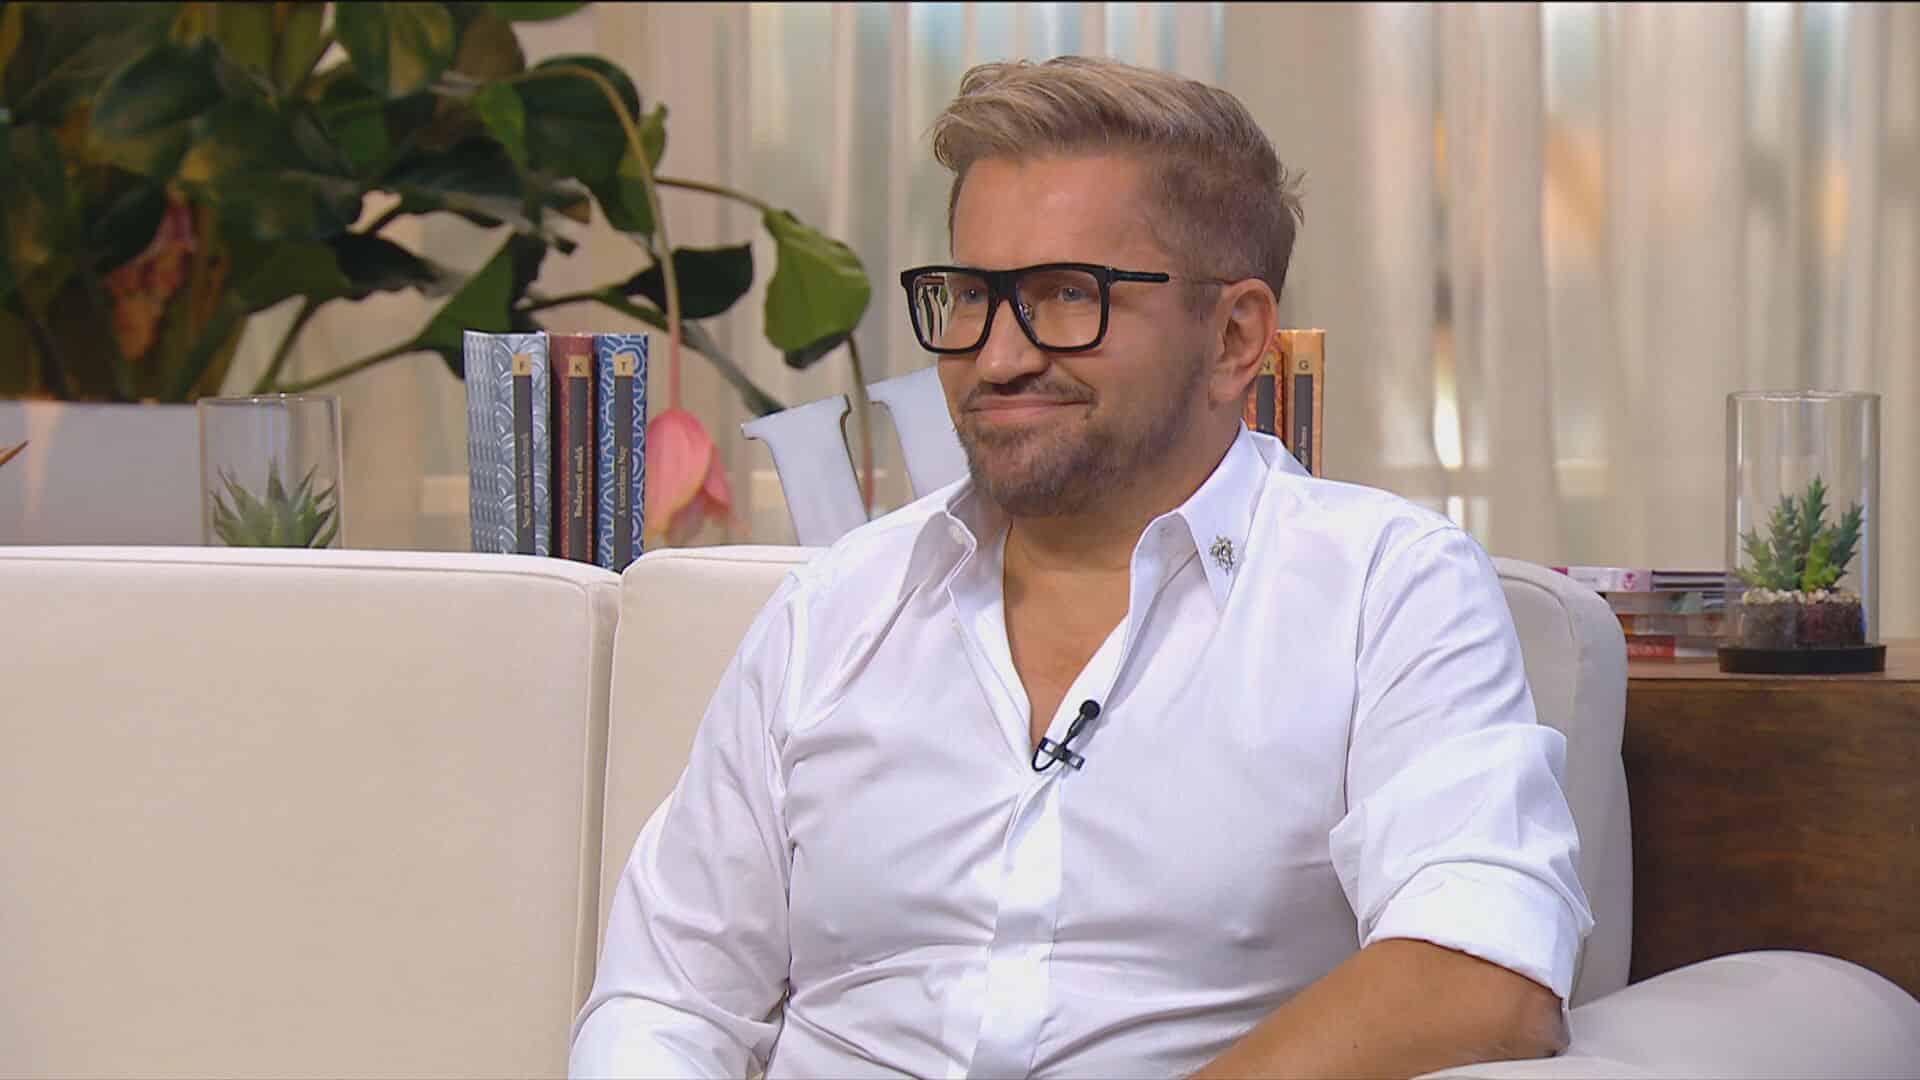 egy férfi fehér ingben és szemüvegben ül egy kanapén egy stúdióban és mosolyog, ez a férfi Jákob Zoltán magyar milliárdos vállalkozó a Crystal Nails tulajdonosa